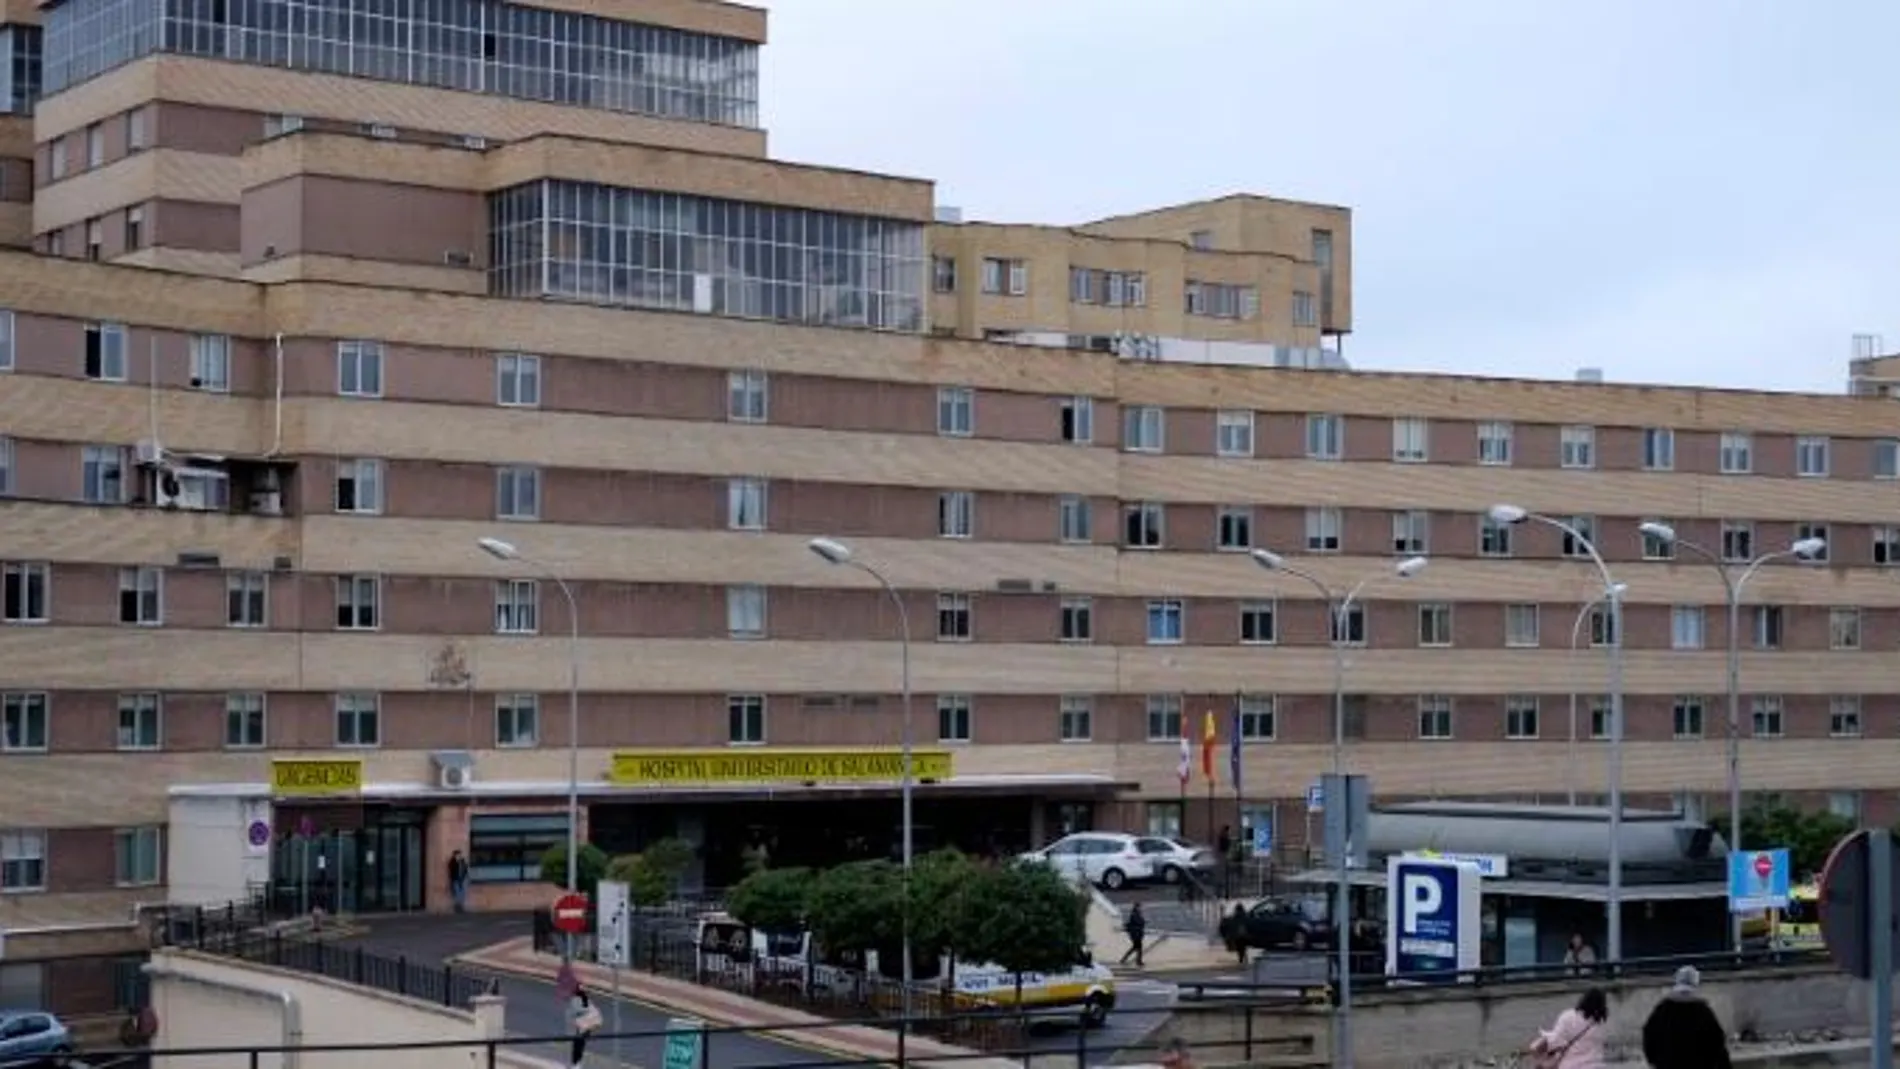 Hospital Clínico Universitario de Salamanca